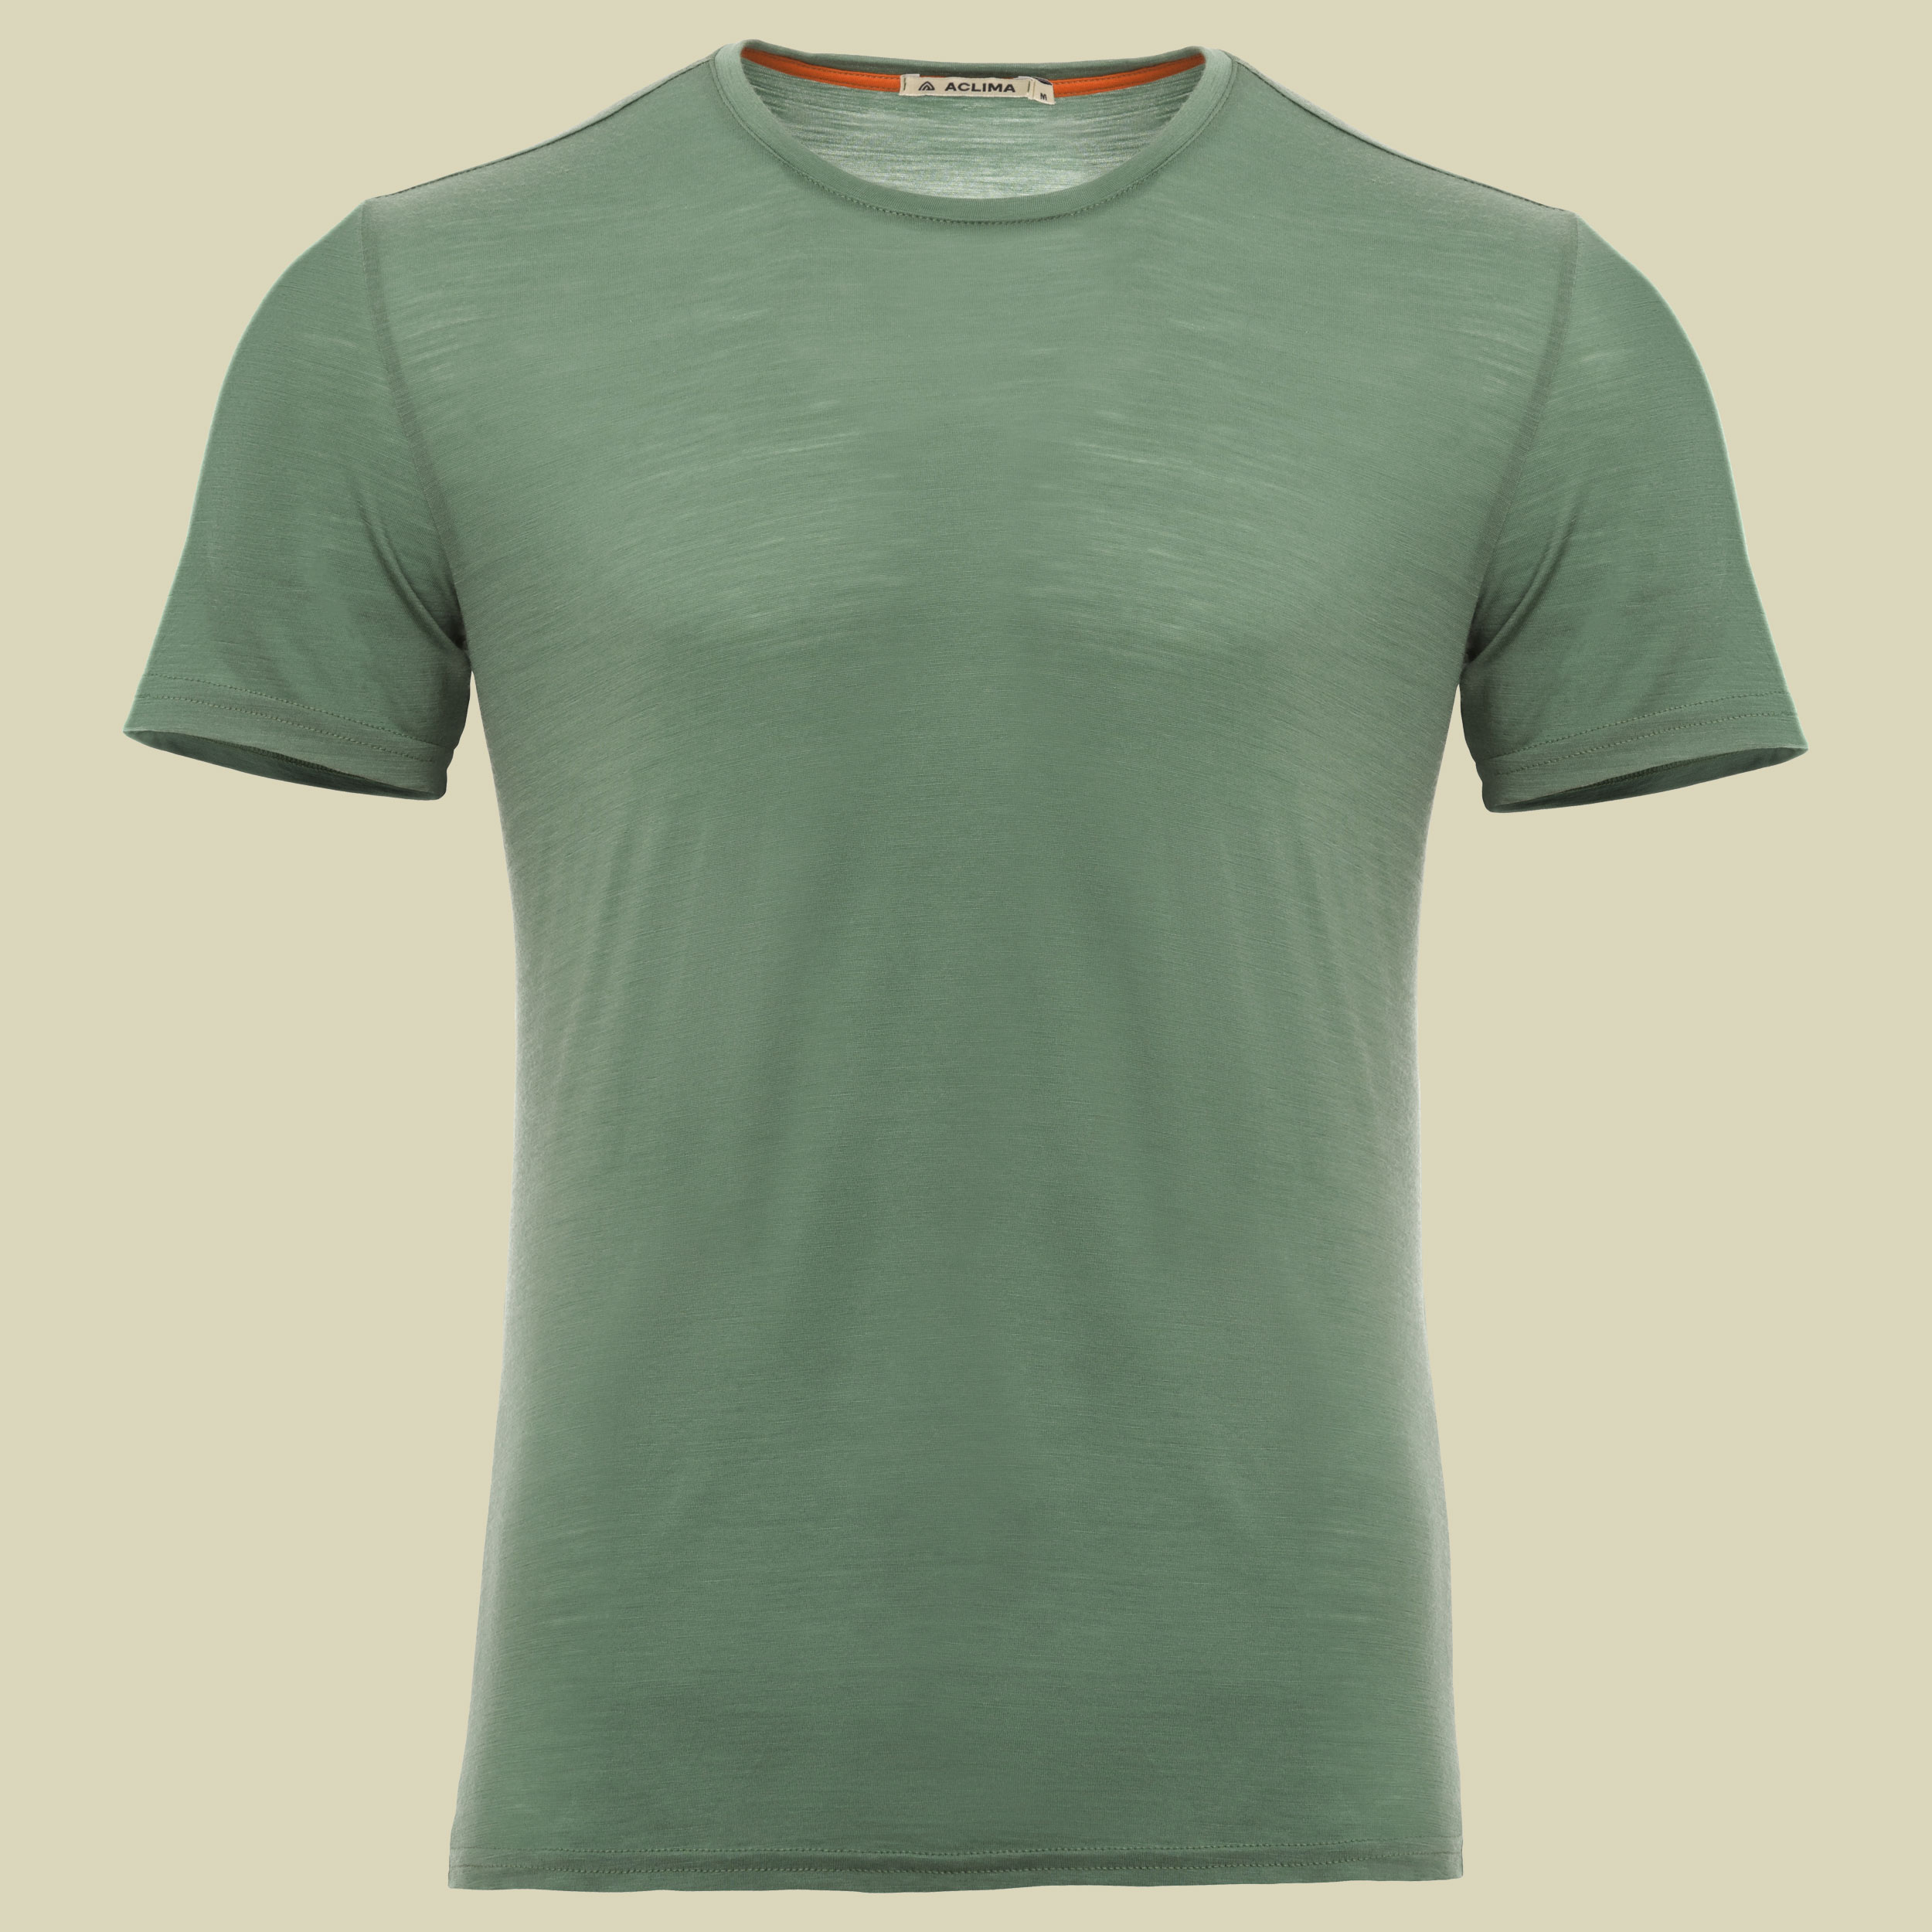 LightWool T-Shirt Men Größe L  Farbe dark ivy